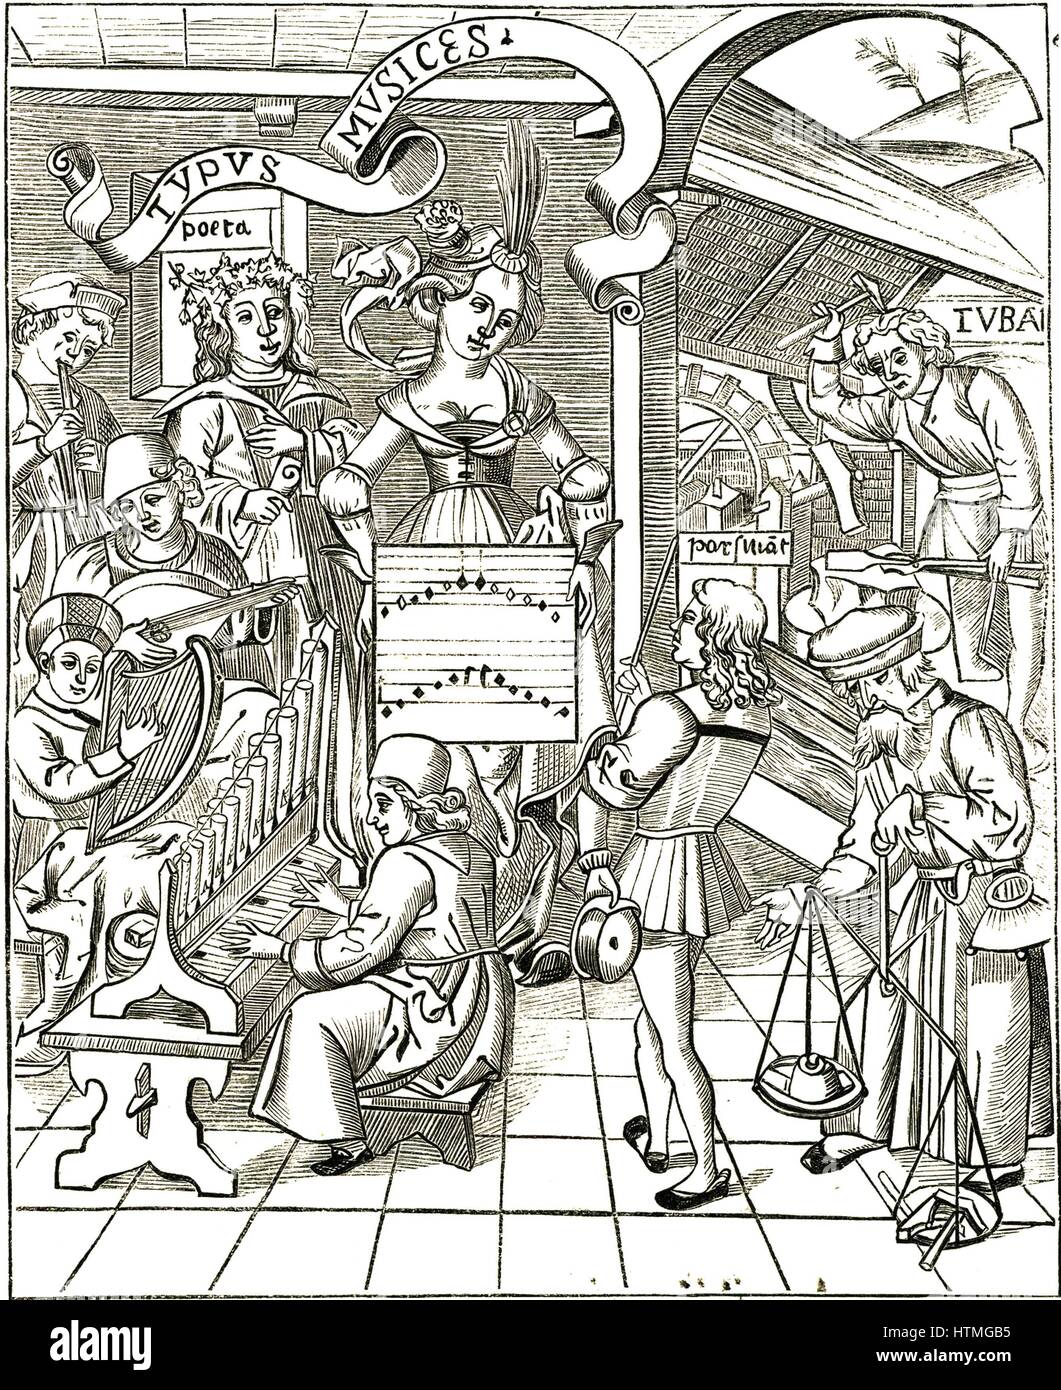 La personificazione della musica da Gregor Reisch 'Margarita Philosophica', Strasburgo, 1508. In primo piano a sinistra l'uomo svolge un organo portatile, al di sopra di lui è un uomo giocando un clarsach o arpa celtica, al di sopra di lui un liuto come strumento viene giocato. In alto a sinistra un ragazzo gioca il tubo. Foto Stock